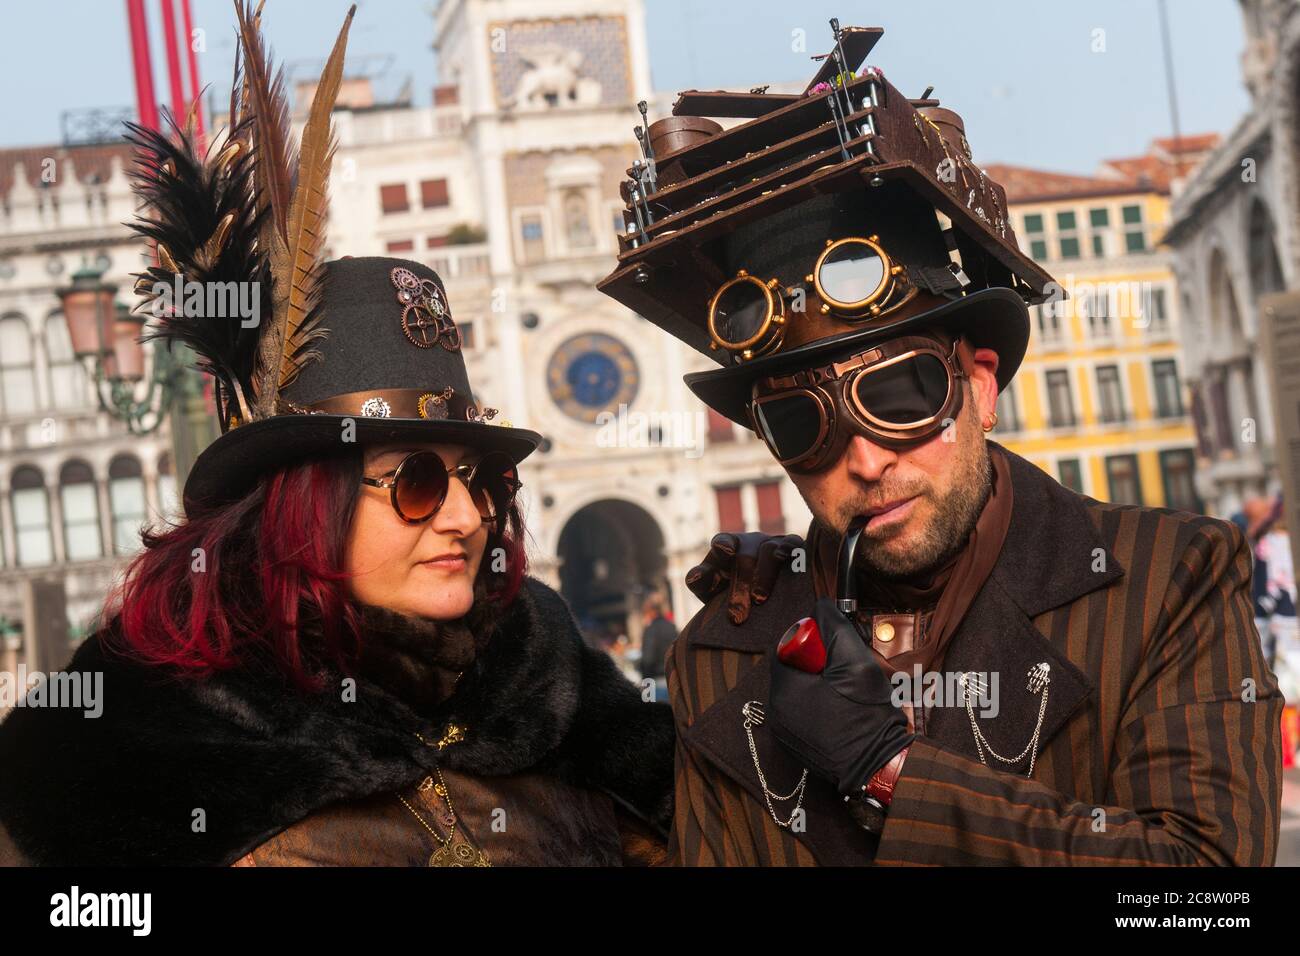 VENEDIG, ITALIEN - 28. FEBRUAR 2020: Zwei Steampunk-Masken posieren auf dem Markusplatz während des Karnevals in Venedig Stockfoto